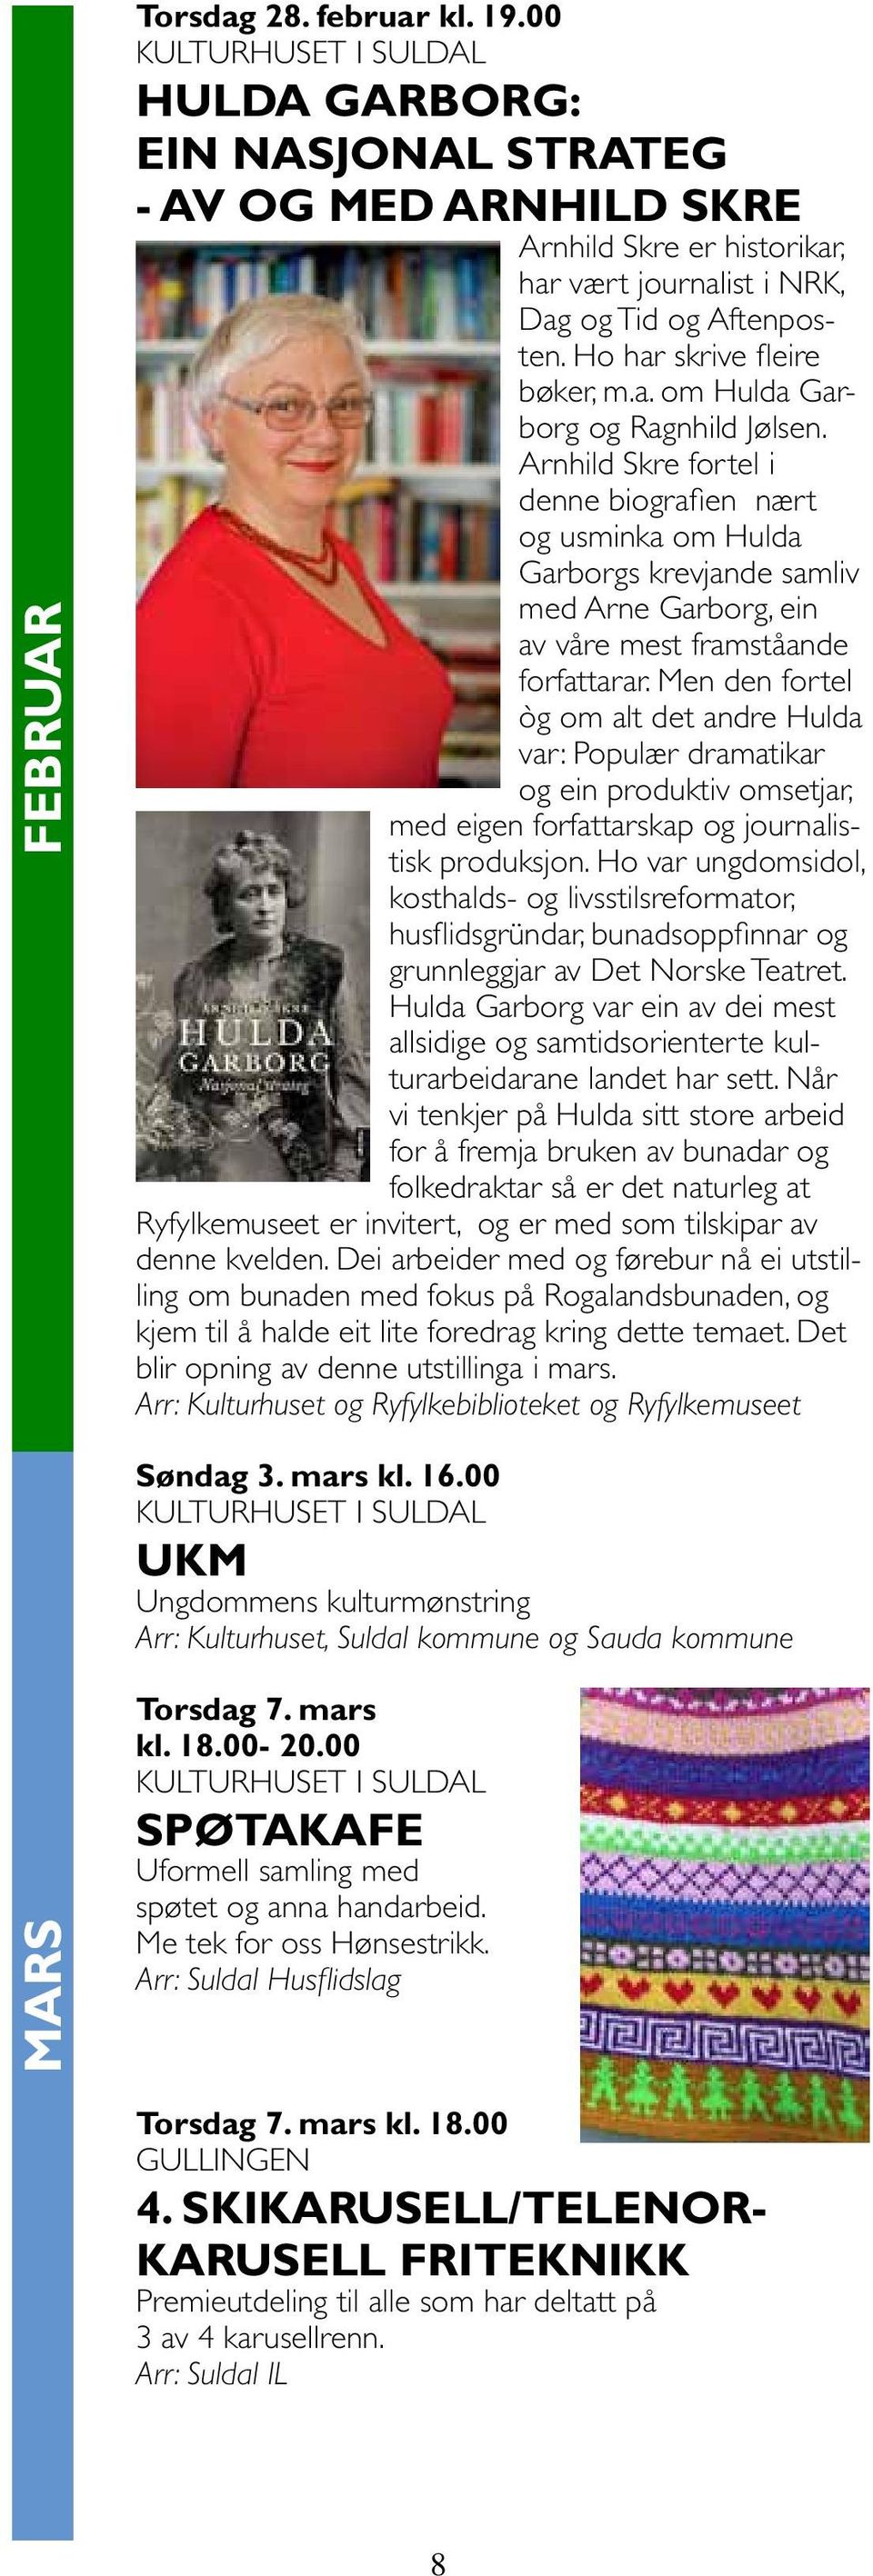 Arnhild Skre fortel i denne biografien nært og usminka om Hulda Garborgs krevjande samliv med Arne Garborg, ein av våre mest framståande forfattarar.